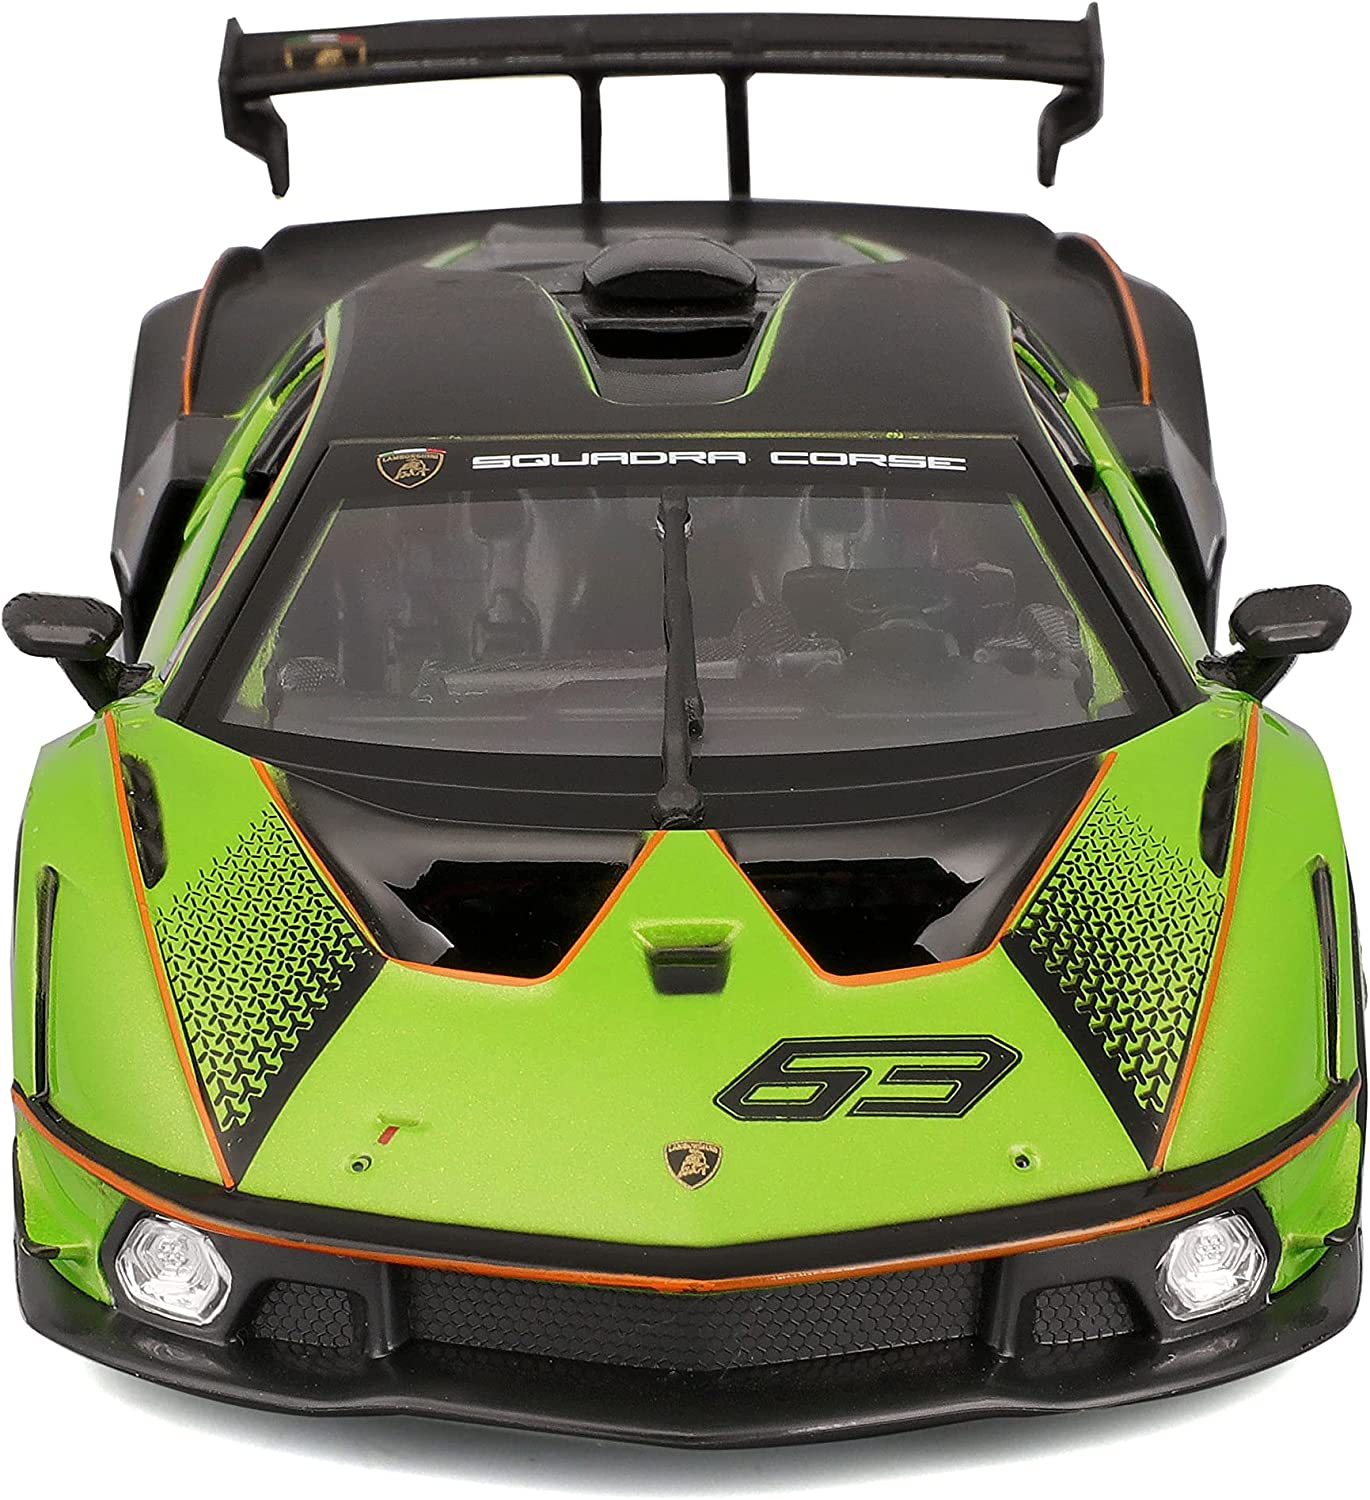 SCV12 Spielzeugauto Modellauto Lamborghini (grün, Maßstab - Essenza BBURAGO - 18-28017 1:24)